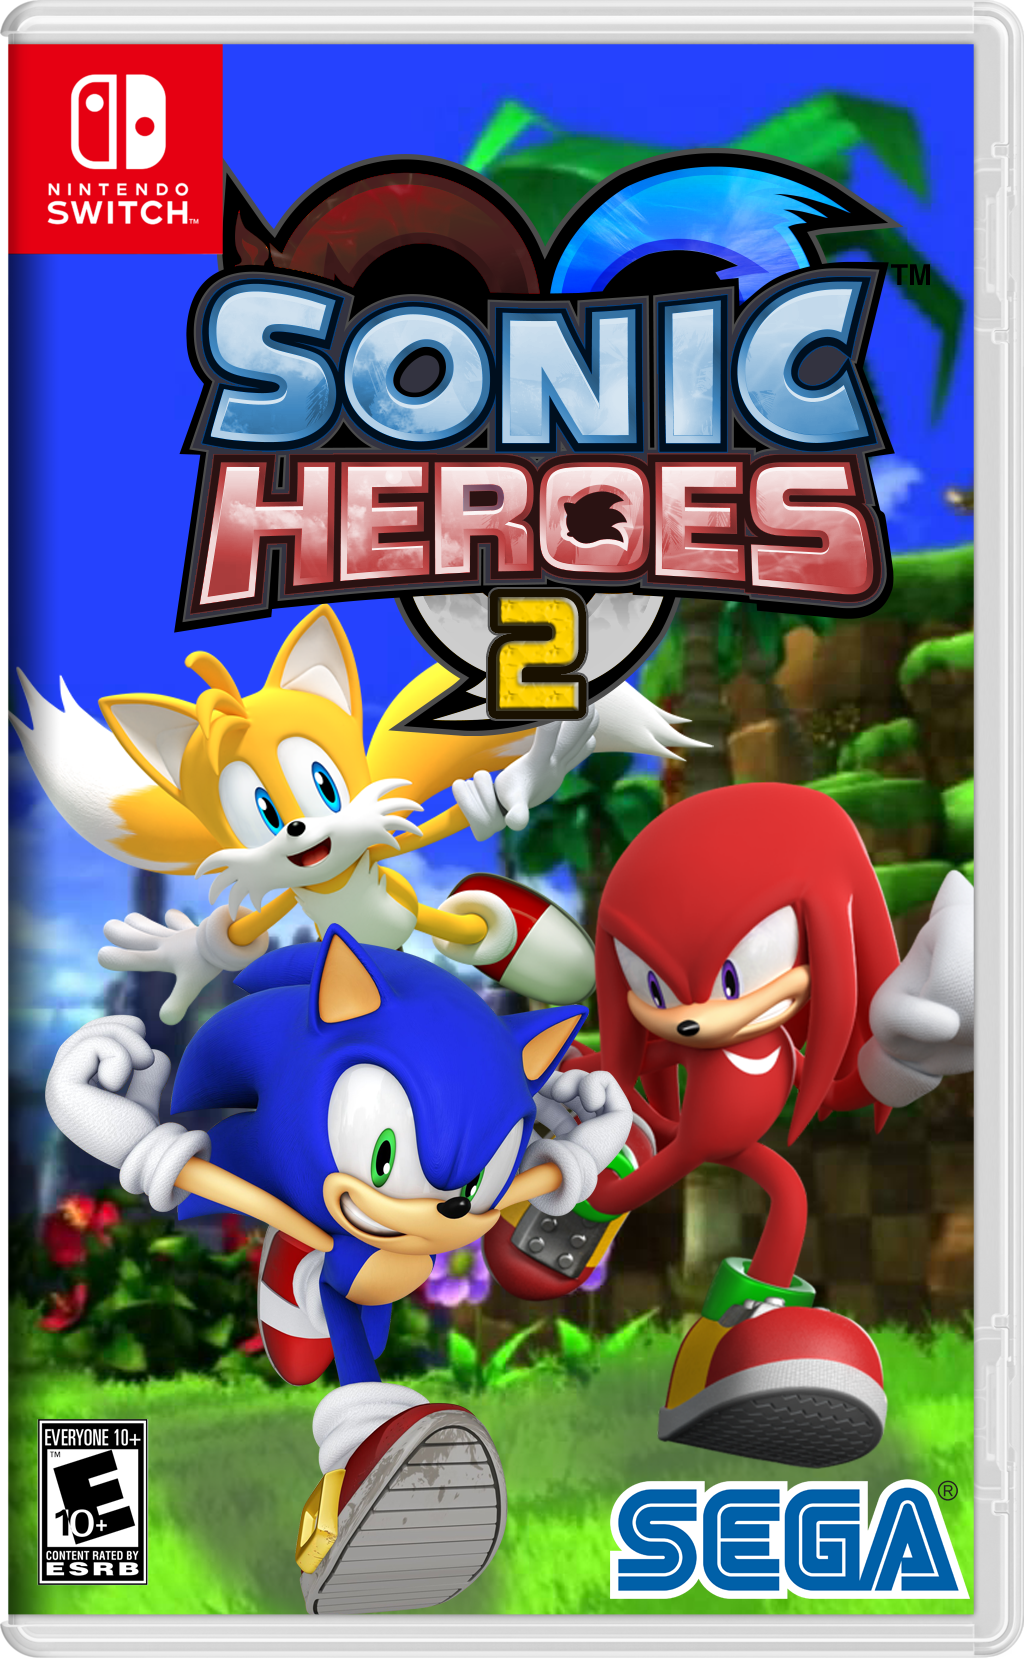 sonic the hedgehog 2 heroes game